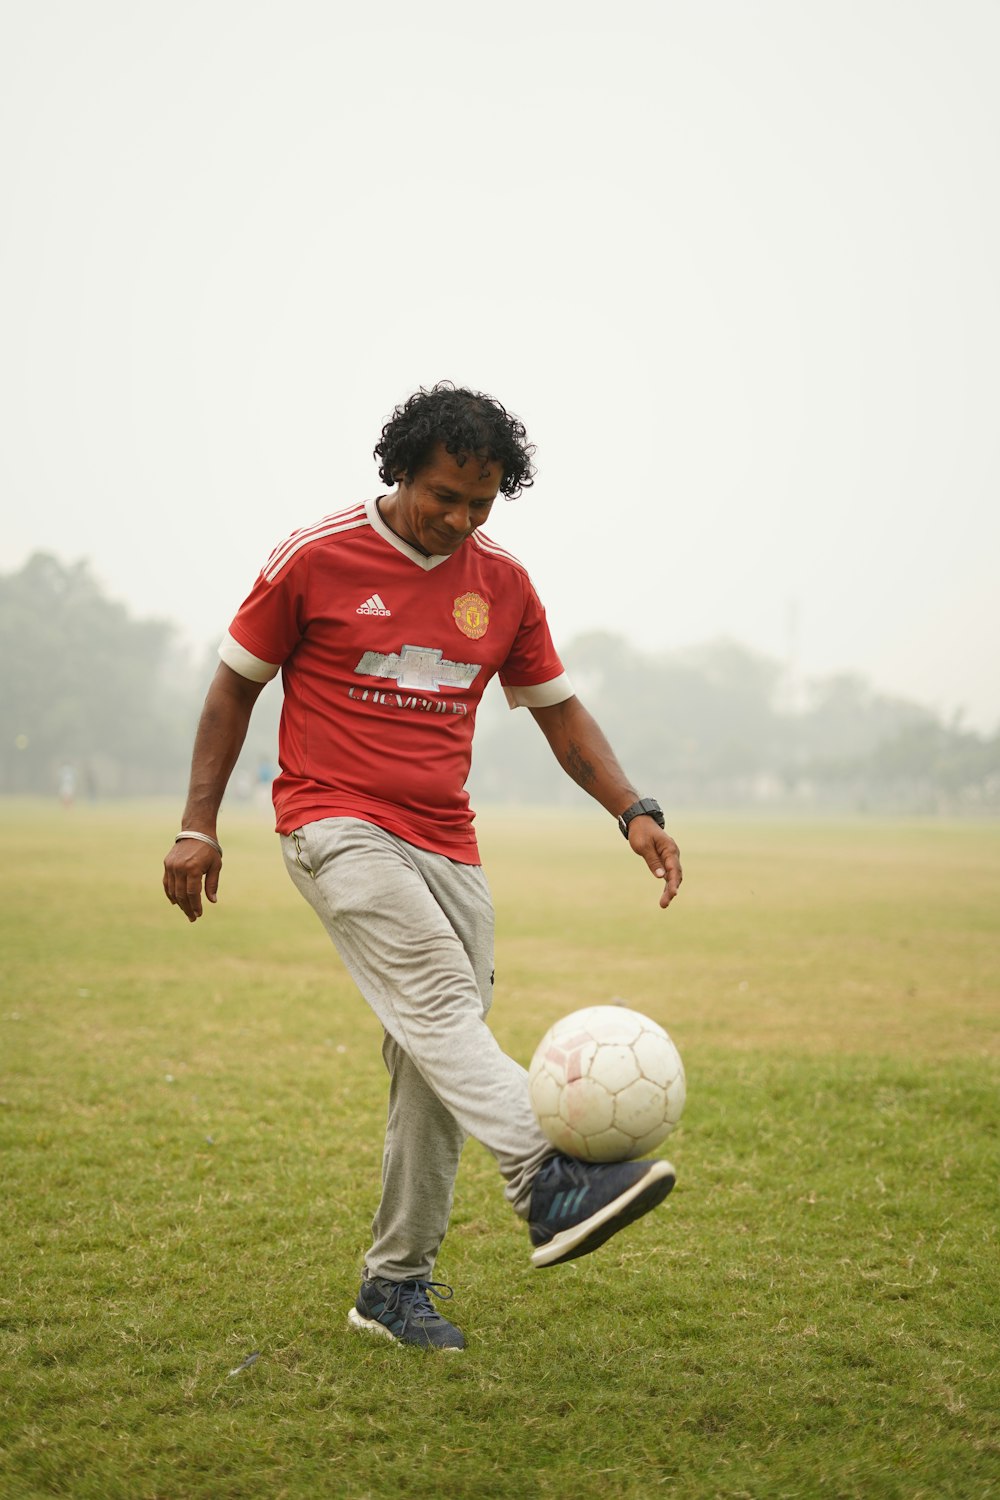 昼間、緑の芝生のグラウンドでサッカーボールを蹴る赤と白のサッカージャージを着た男性